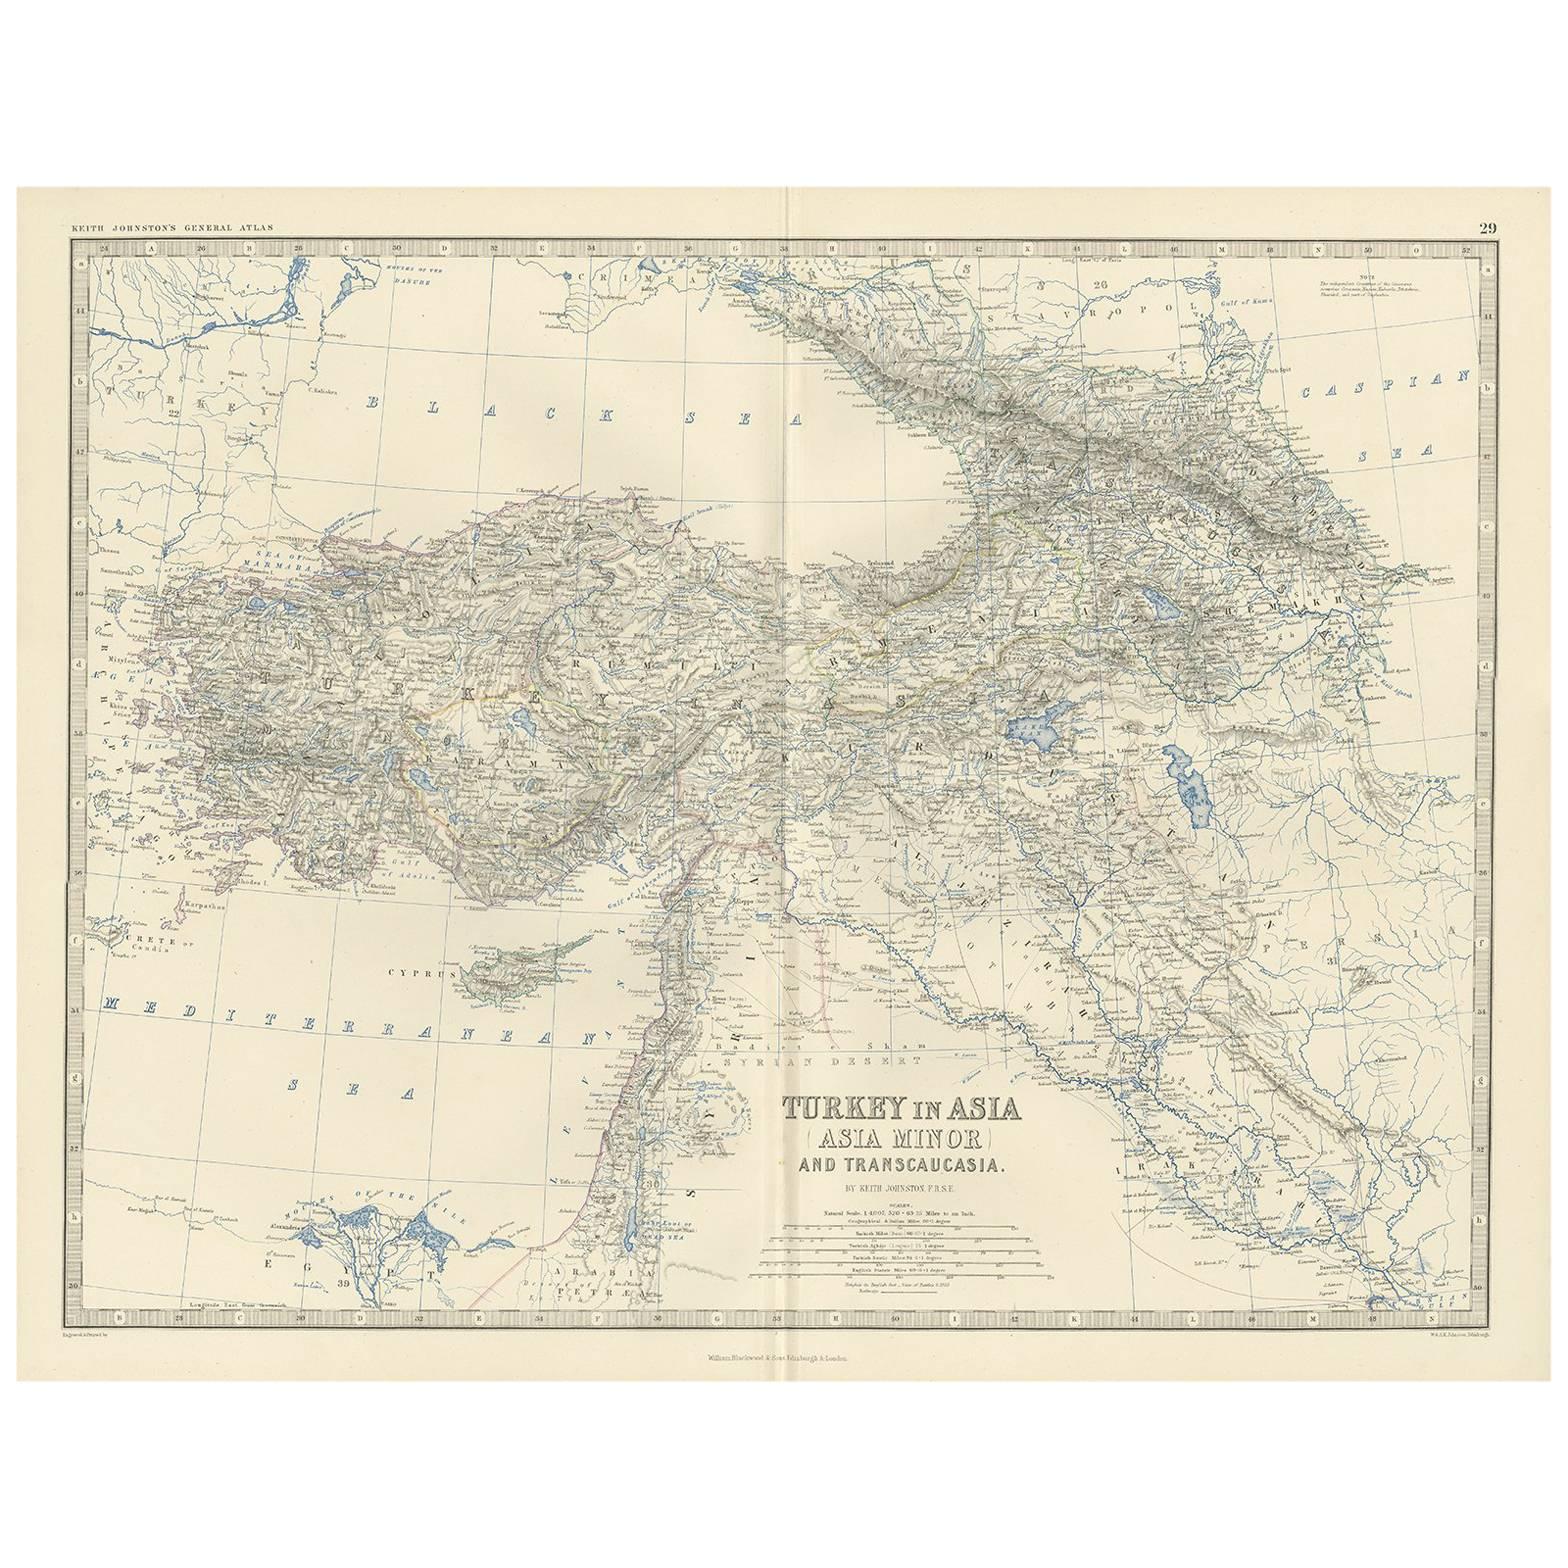 Carte ancienne de la Turquie en Asie par A.K. Johnston, 1865